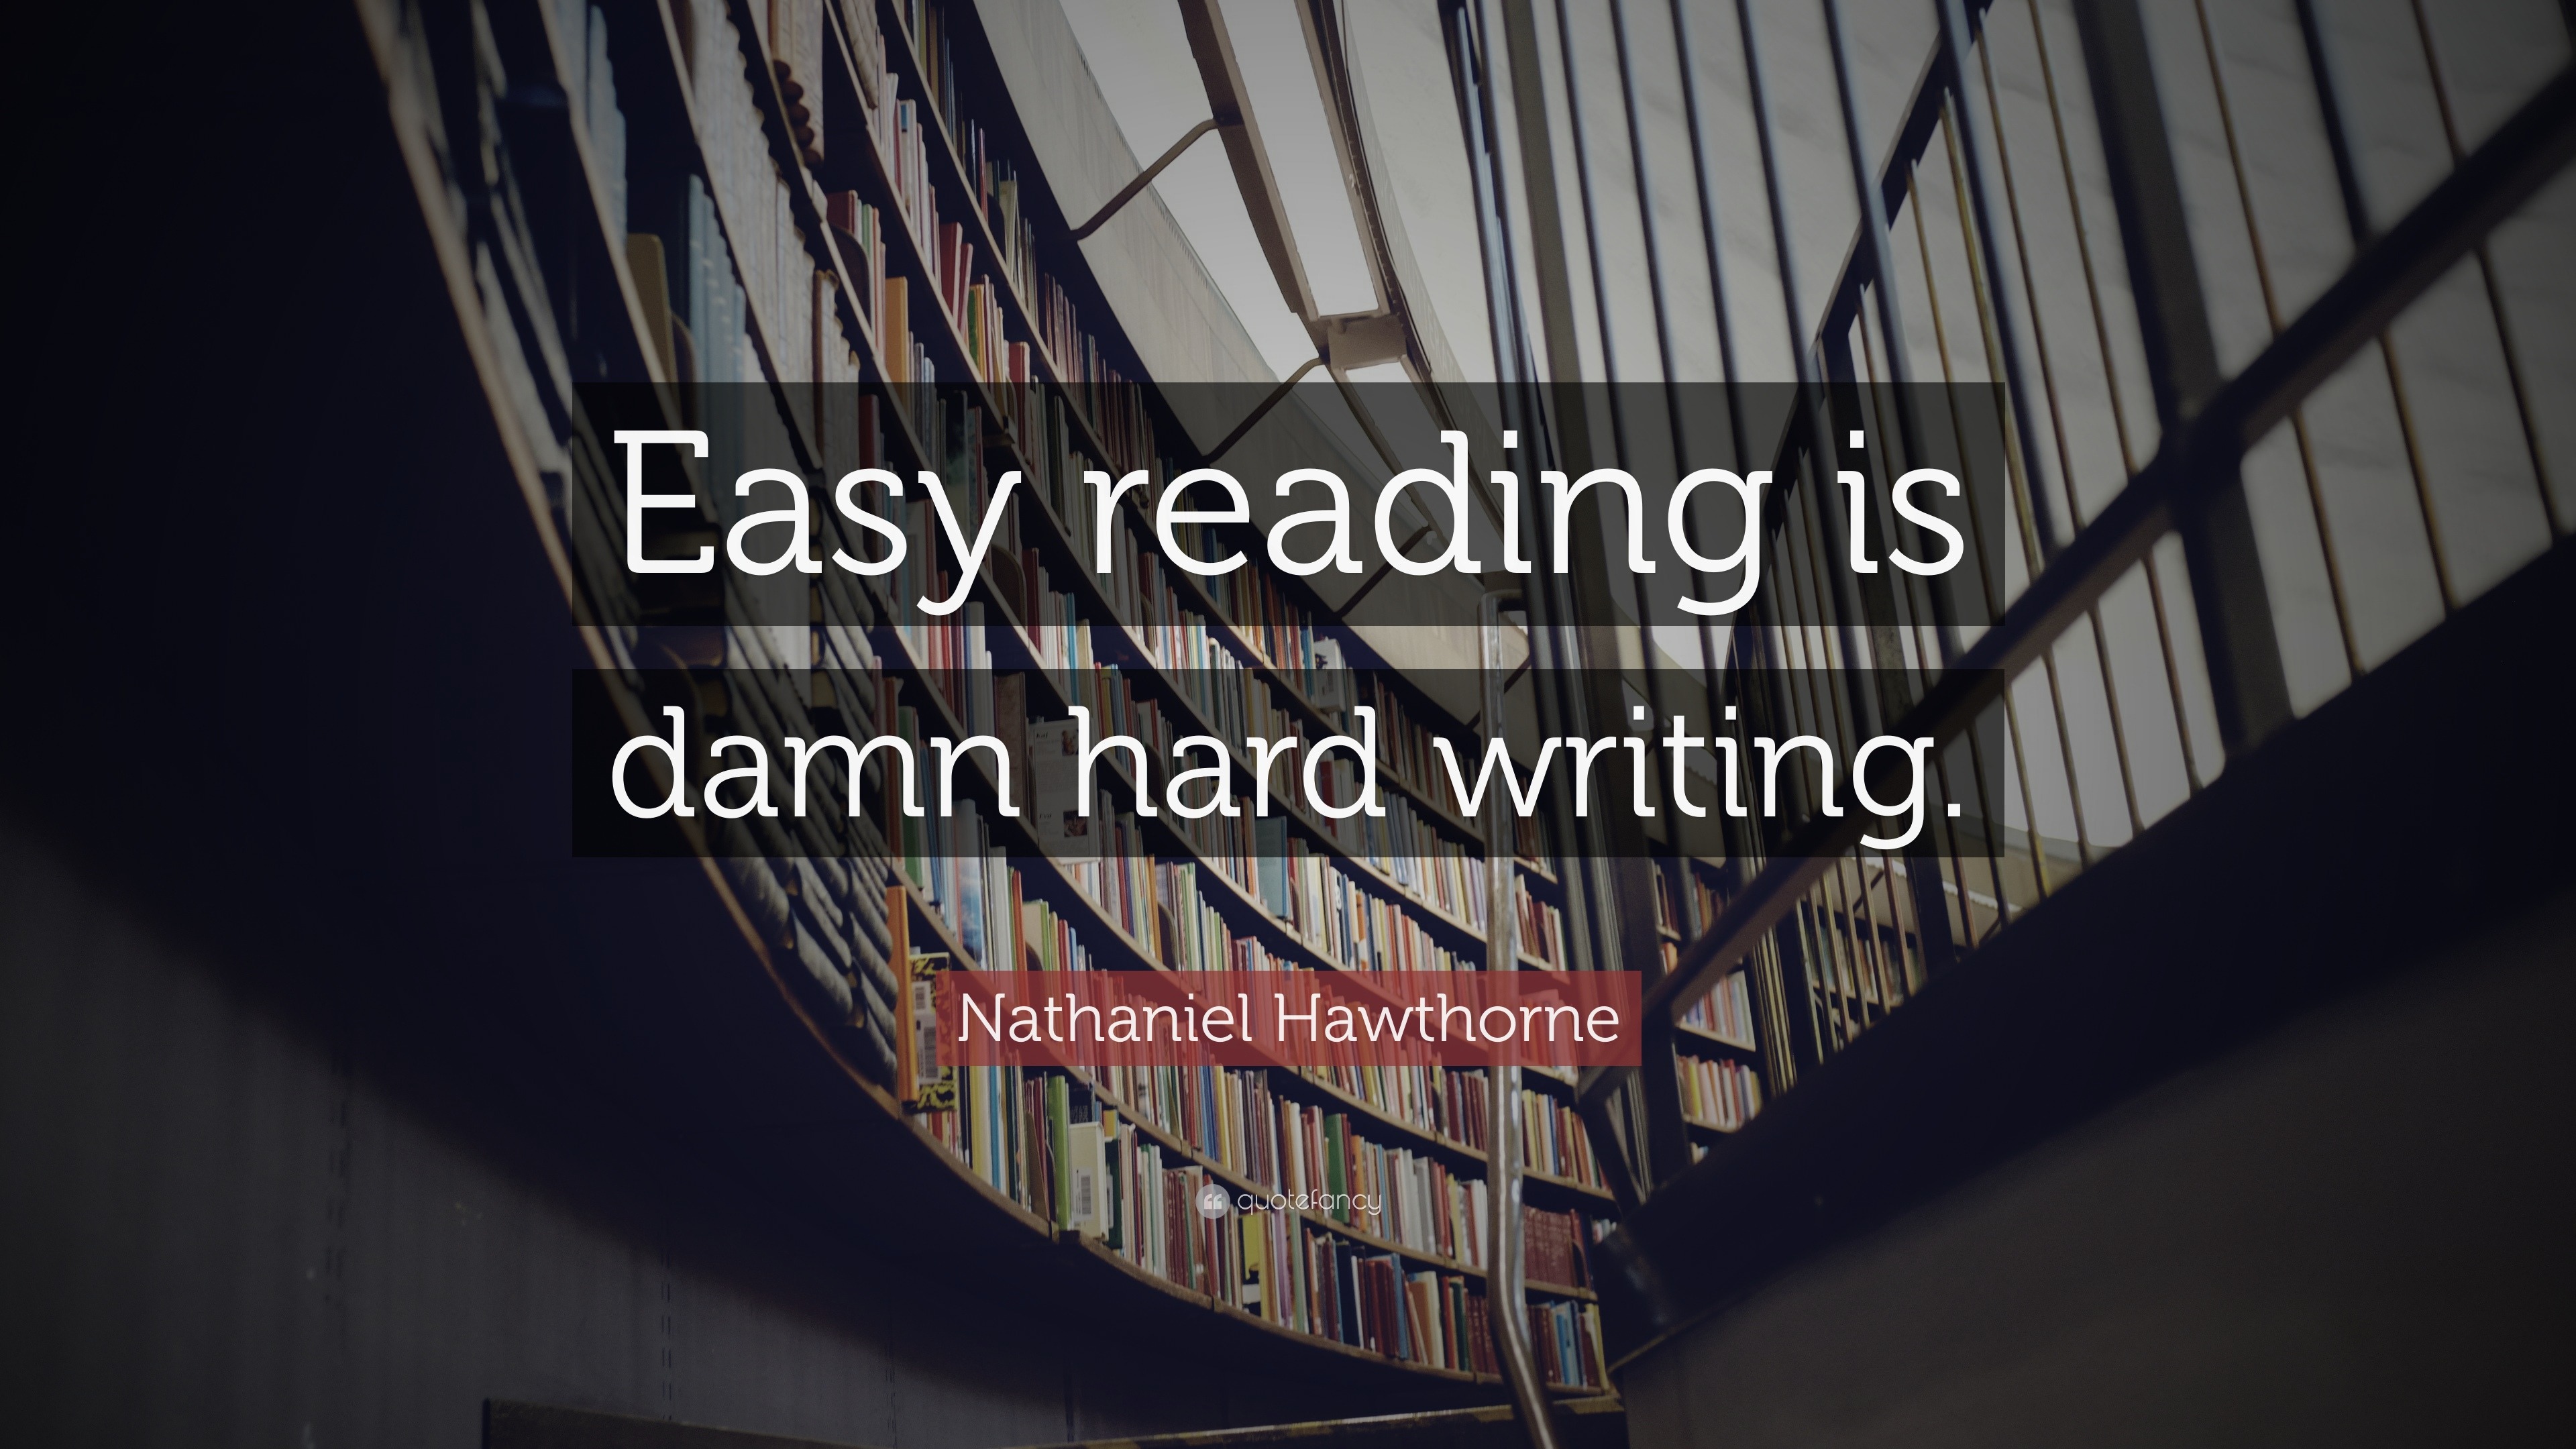 explain easy reading is damn hard writing